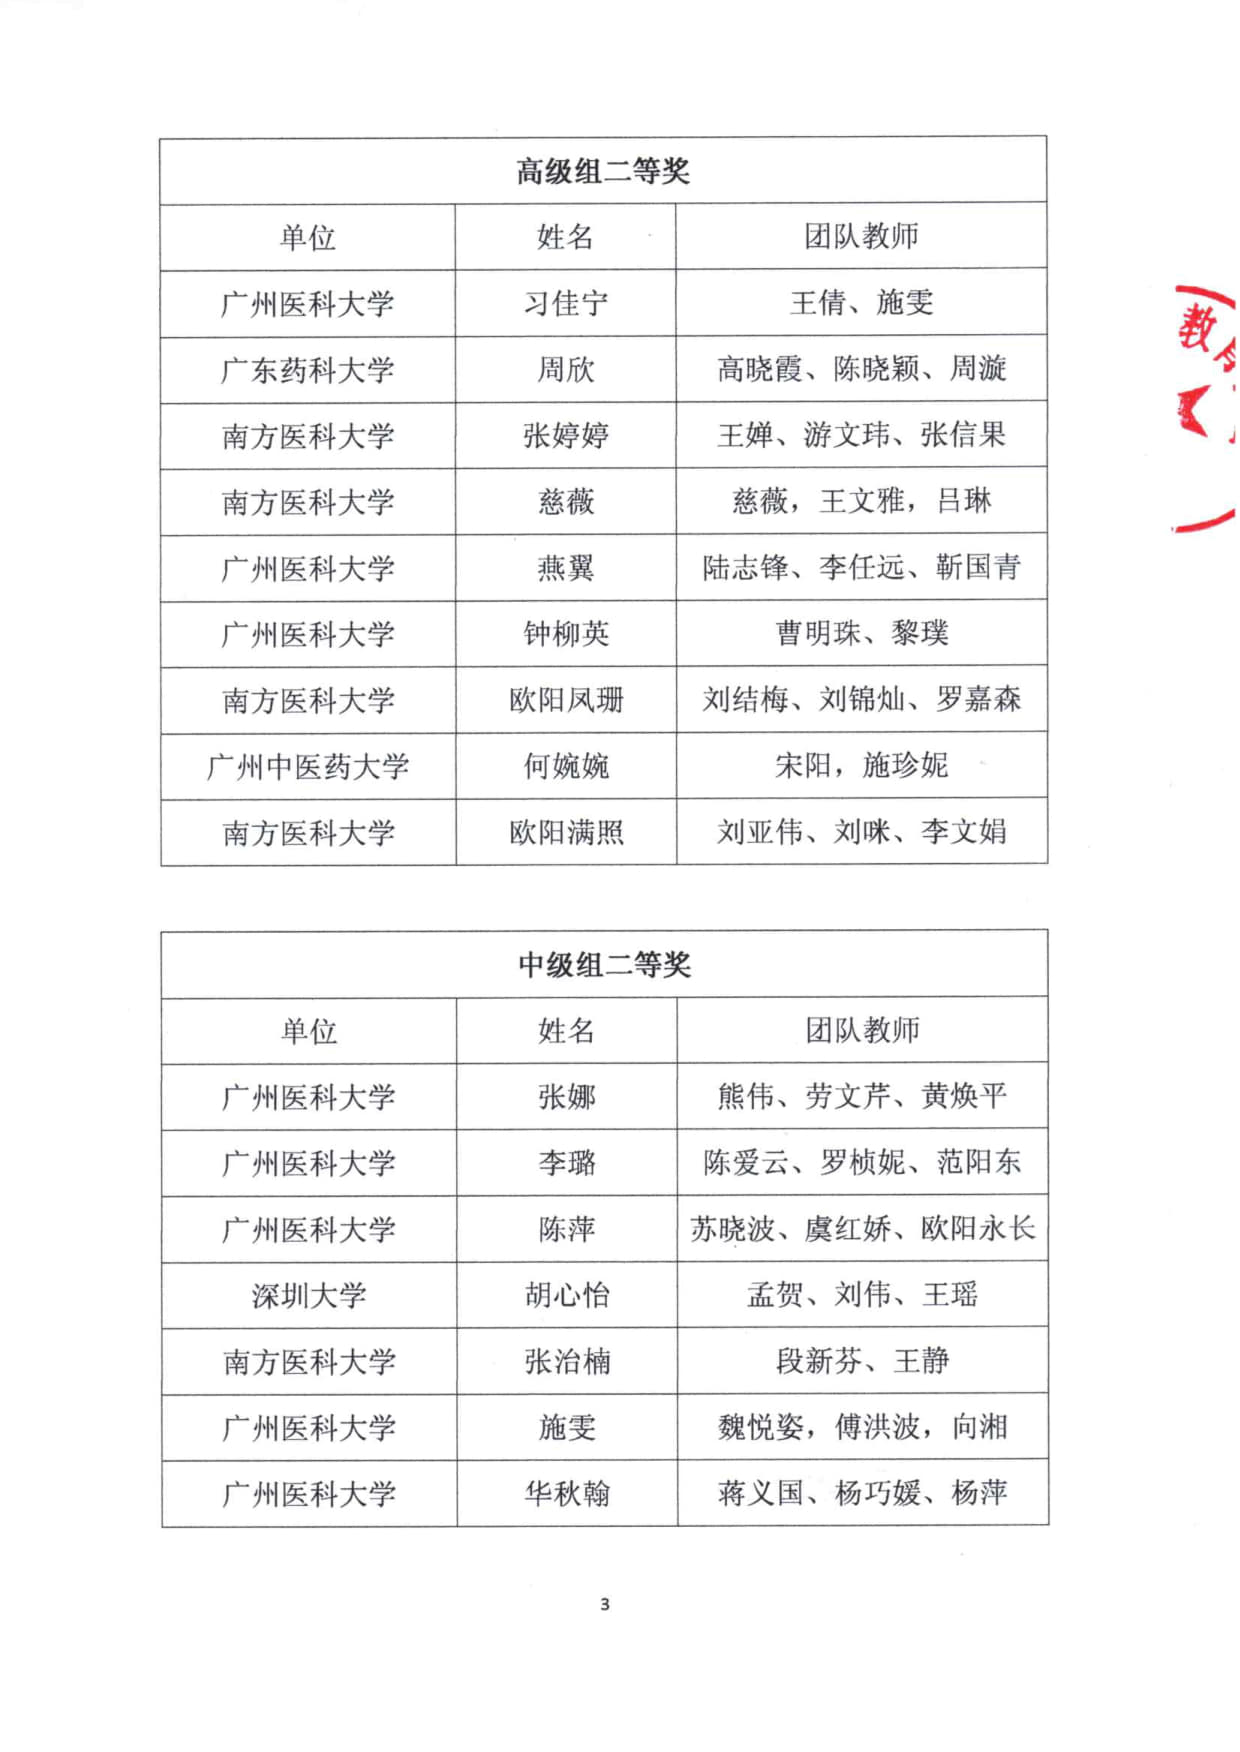 关于公布广东省医药院校教师教学创新大赛获奖名单的通知(1)_3.jpg